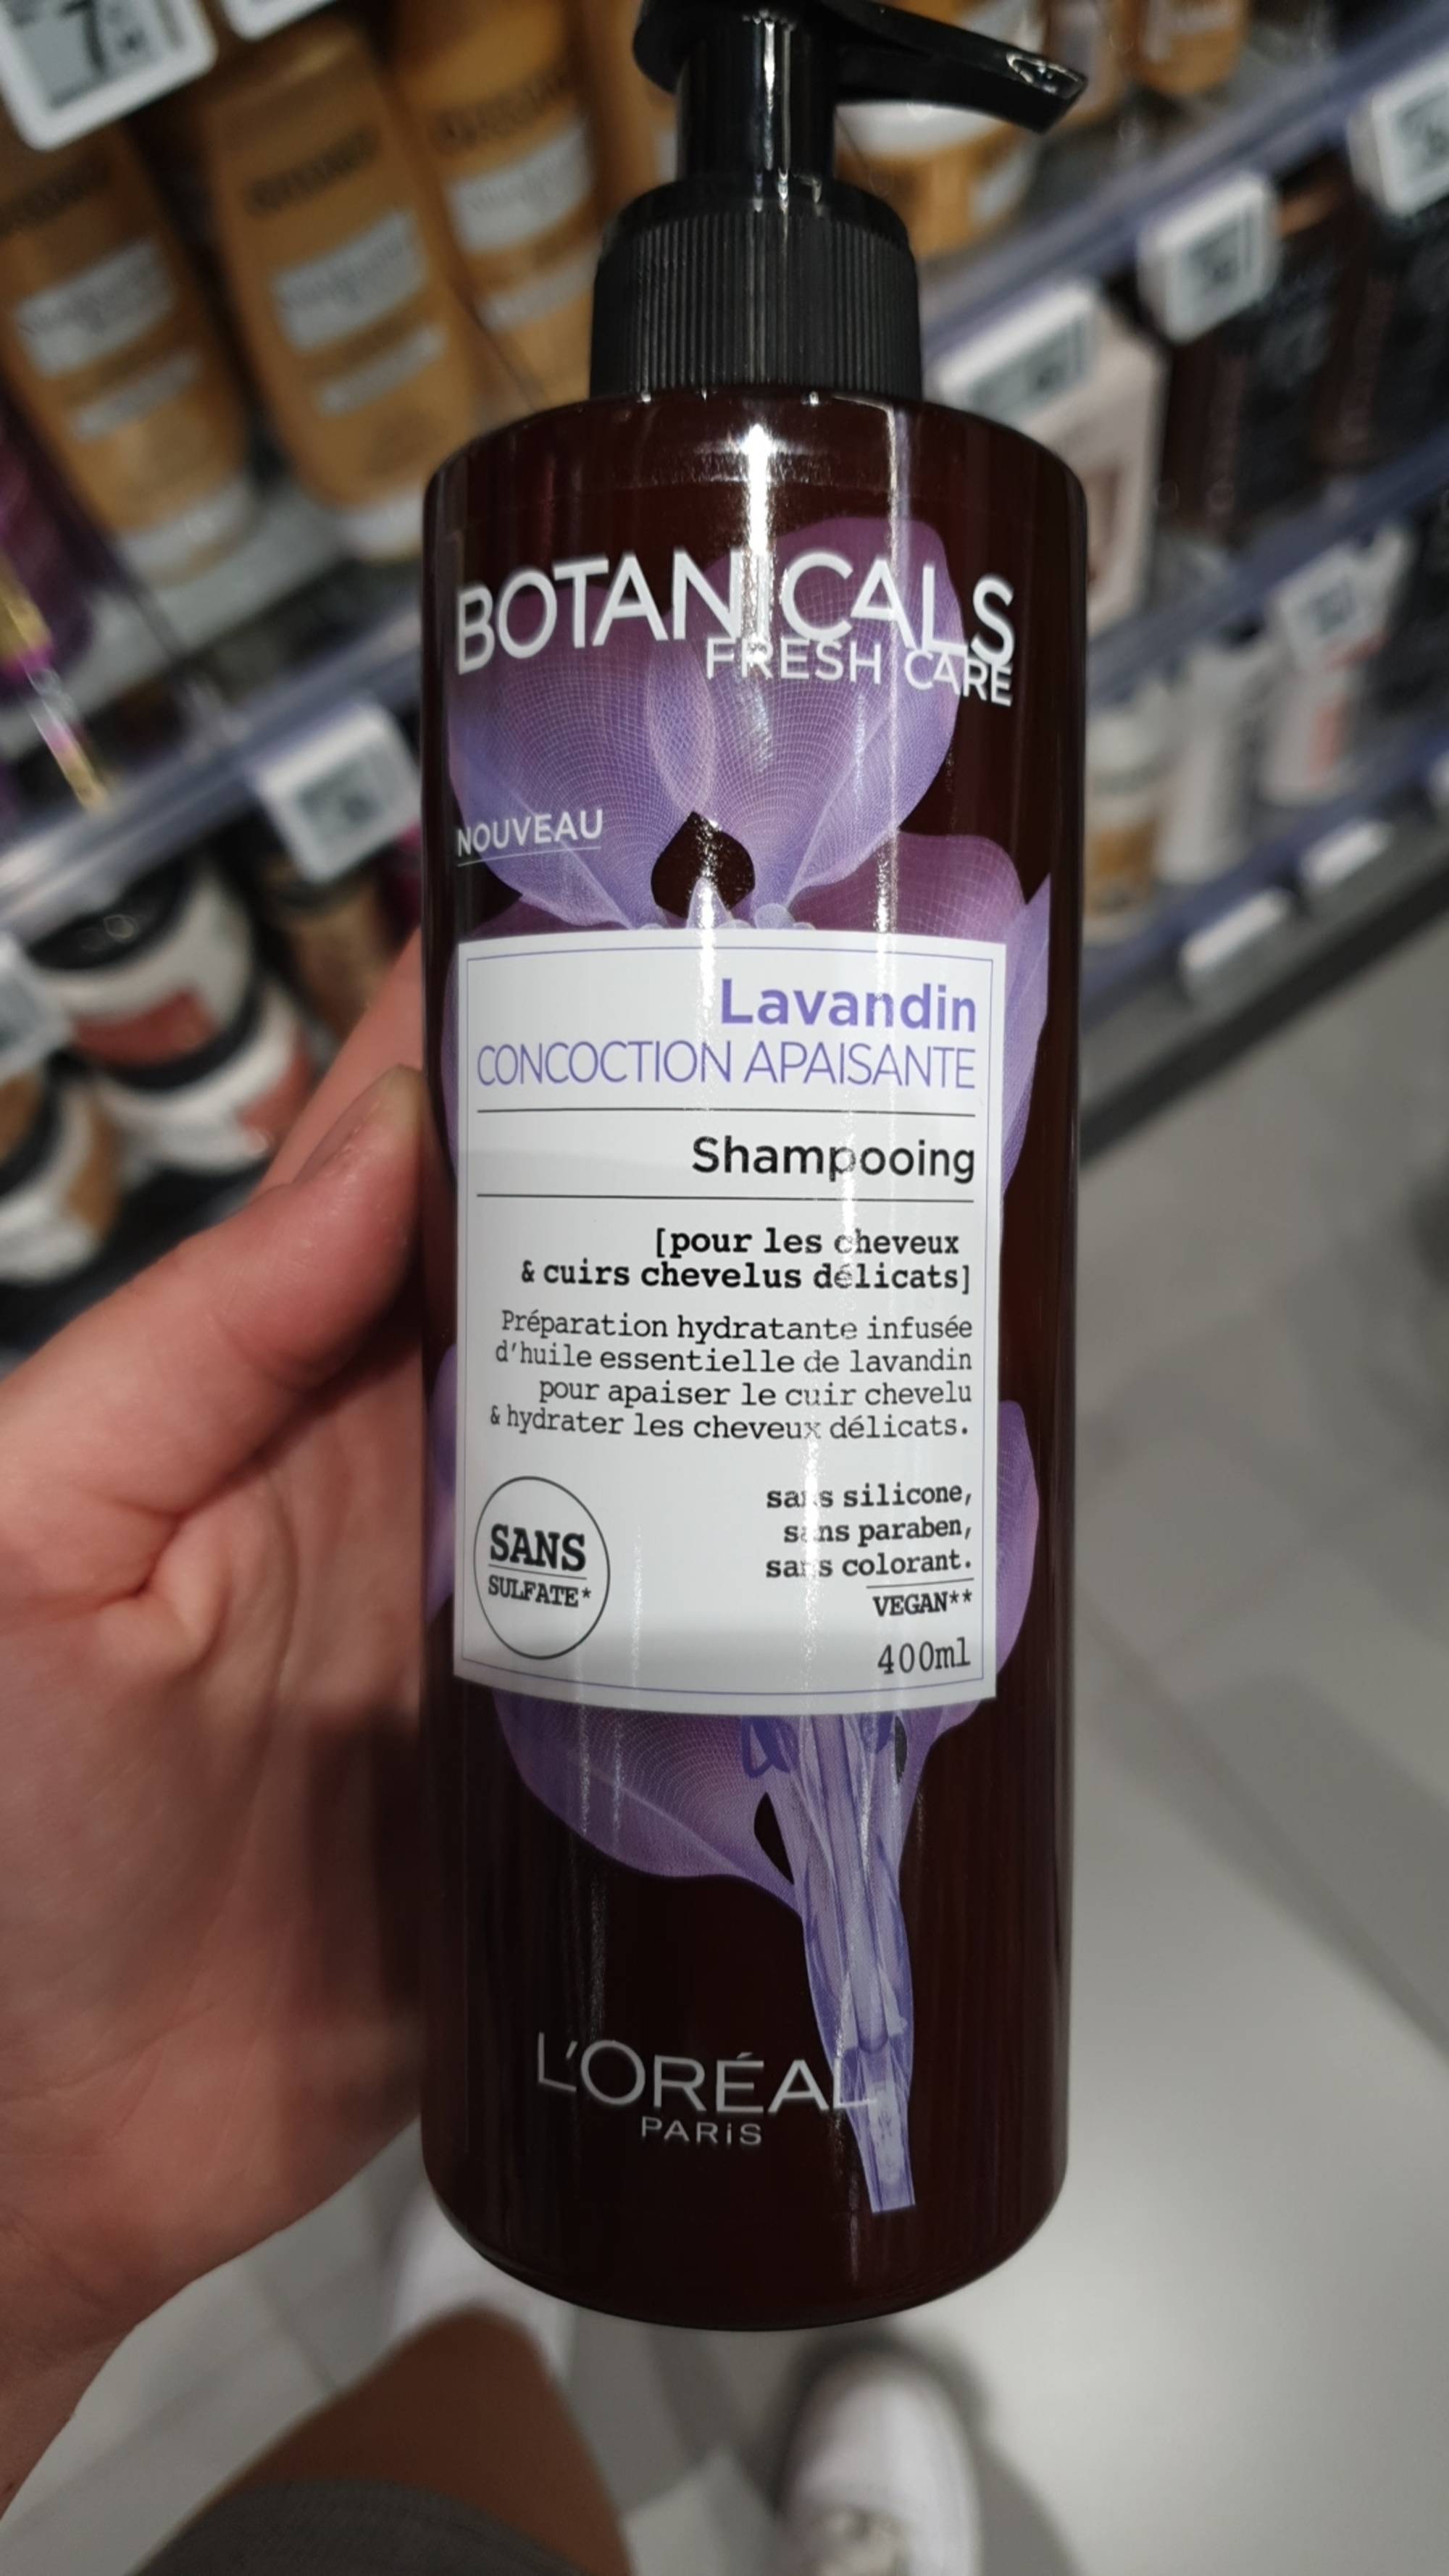 L'ORÉAL PARIS - Botanicals lavandin concoction apaisante - Shampooing